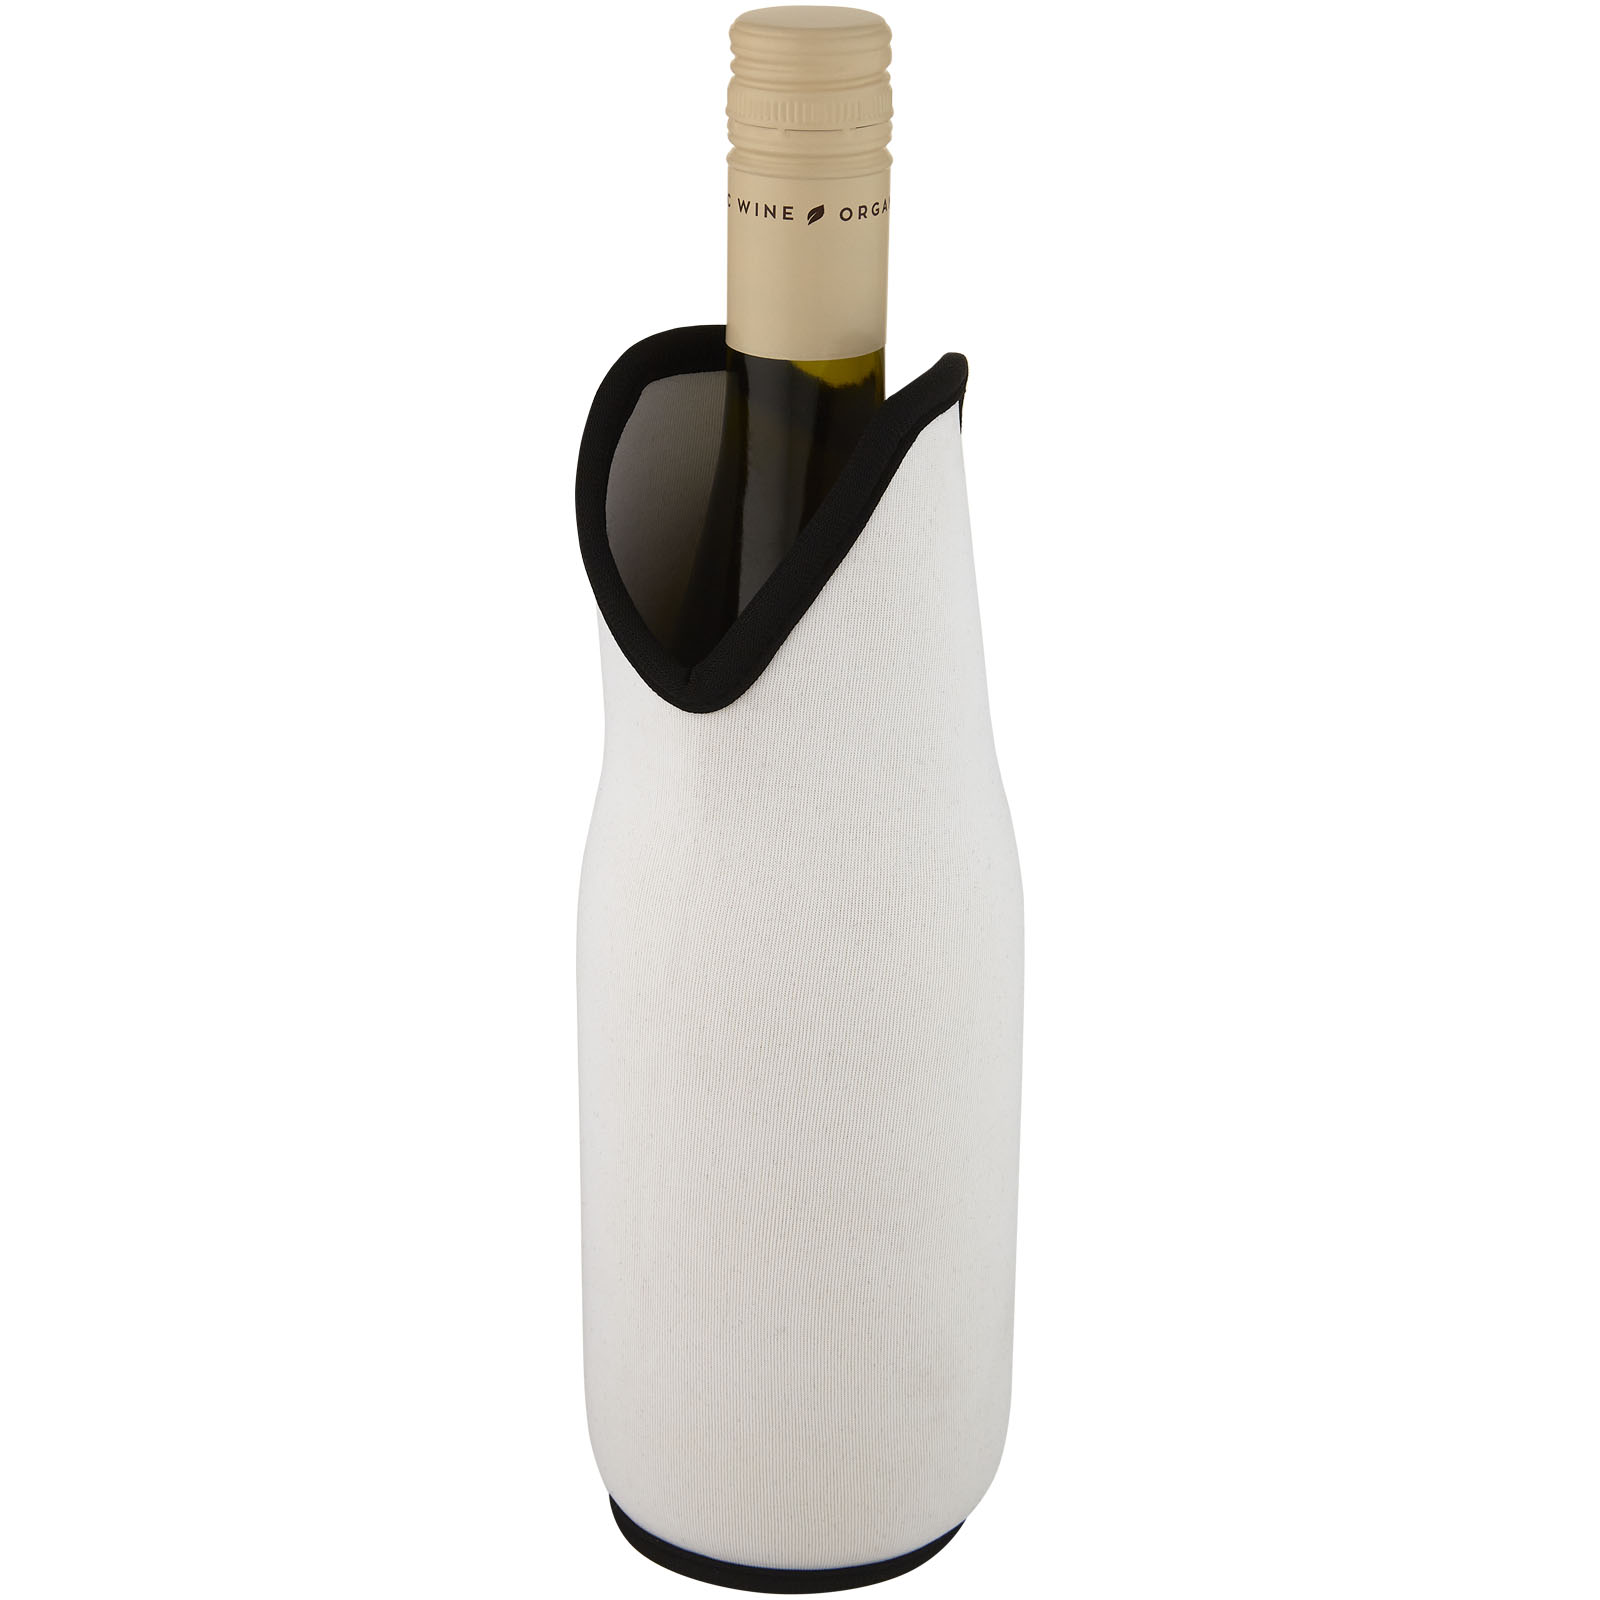 Accessoires pour le vin publicitaires - Manchon Noun en néoprène recyclé pour bouteille de vin